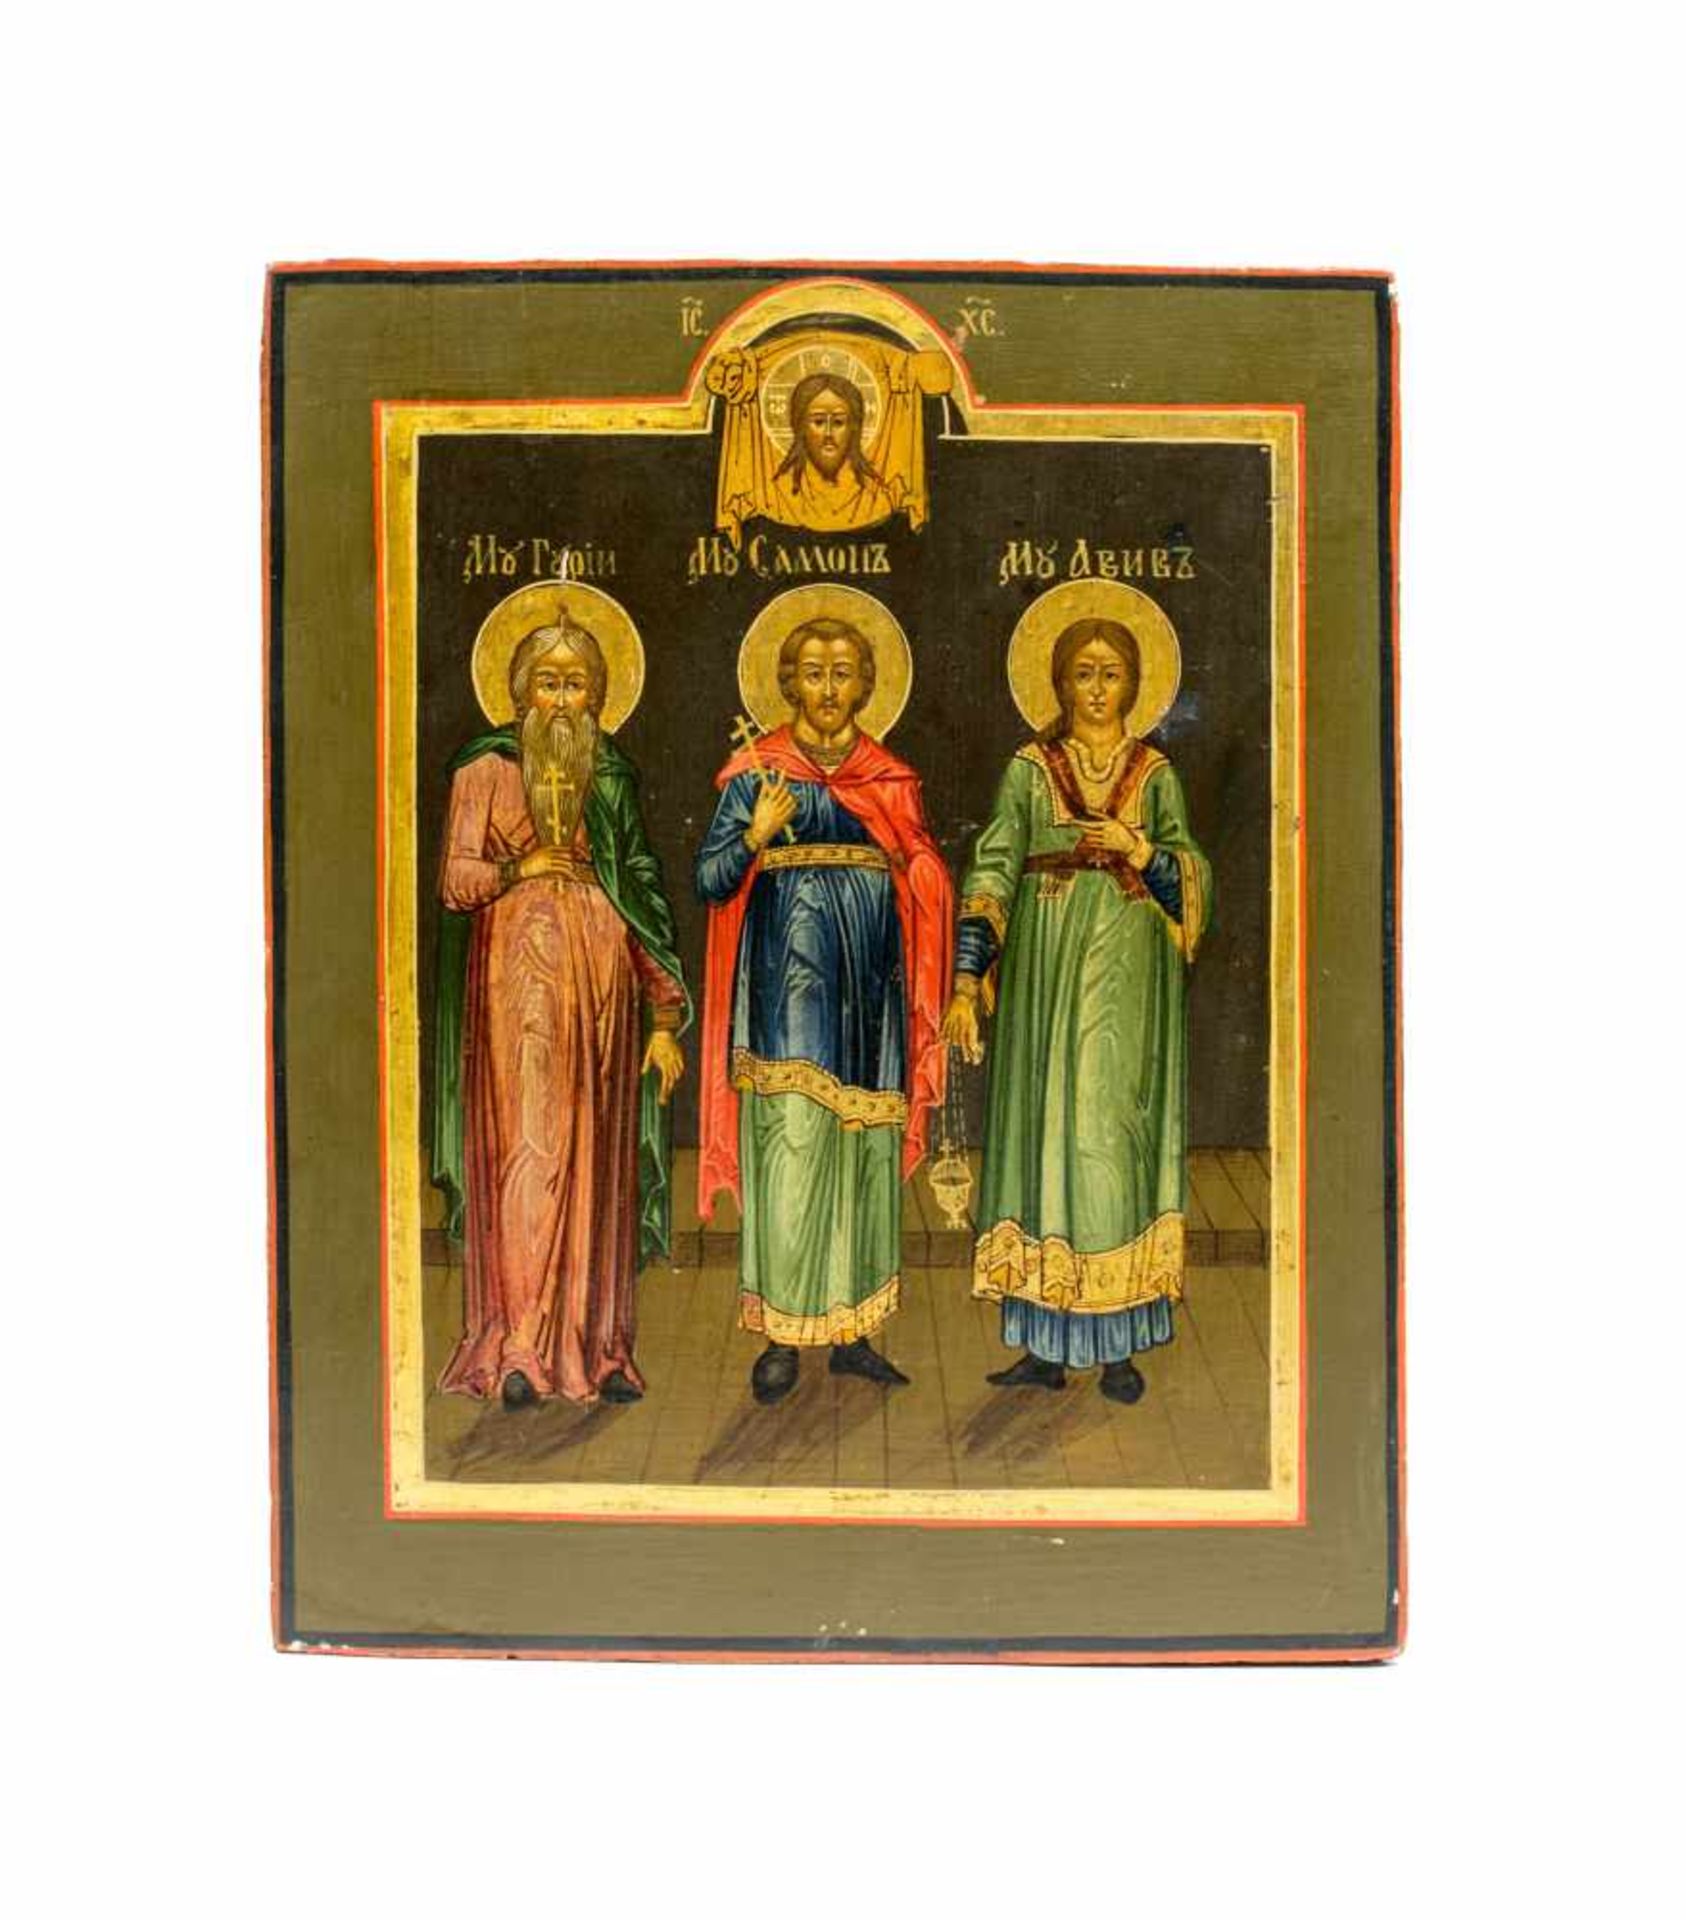 Ikone 'Die Drei Hochzeitsheiligen'Russland, 19. Jh., Tempera auf Holz, 25,7 cm x 21 cm, minimal